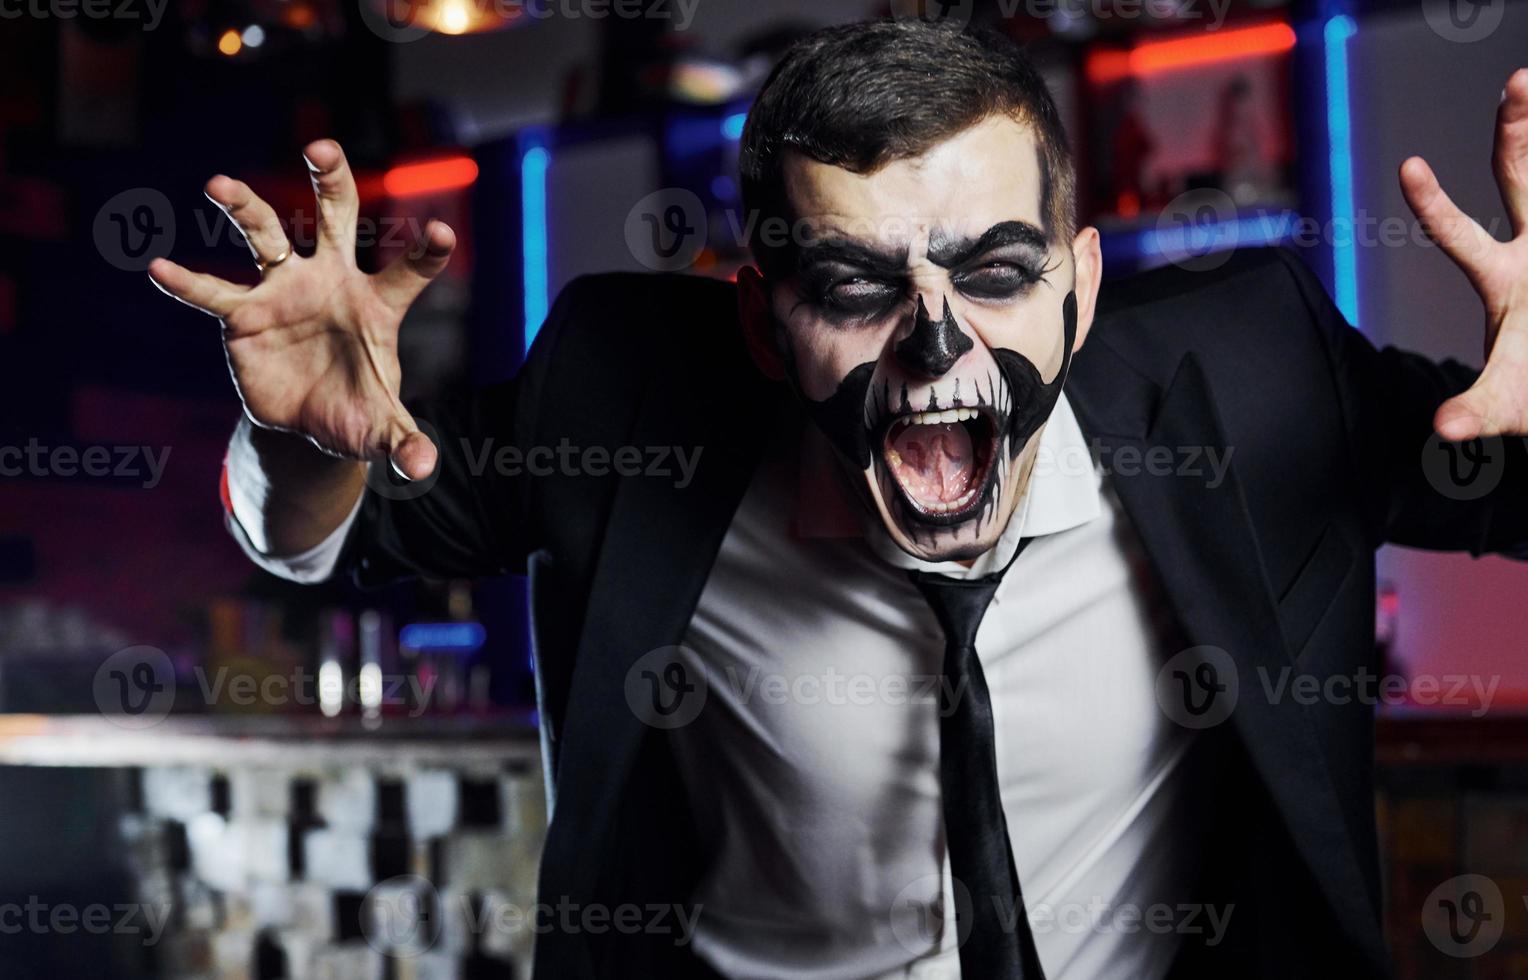 gritando a la cámara. retrato de hombre que está en la fiesta temática de halloween con maquillaje y disfraz de esqueleto aterrador foto